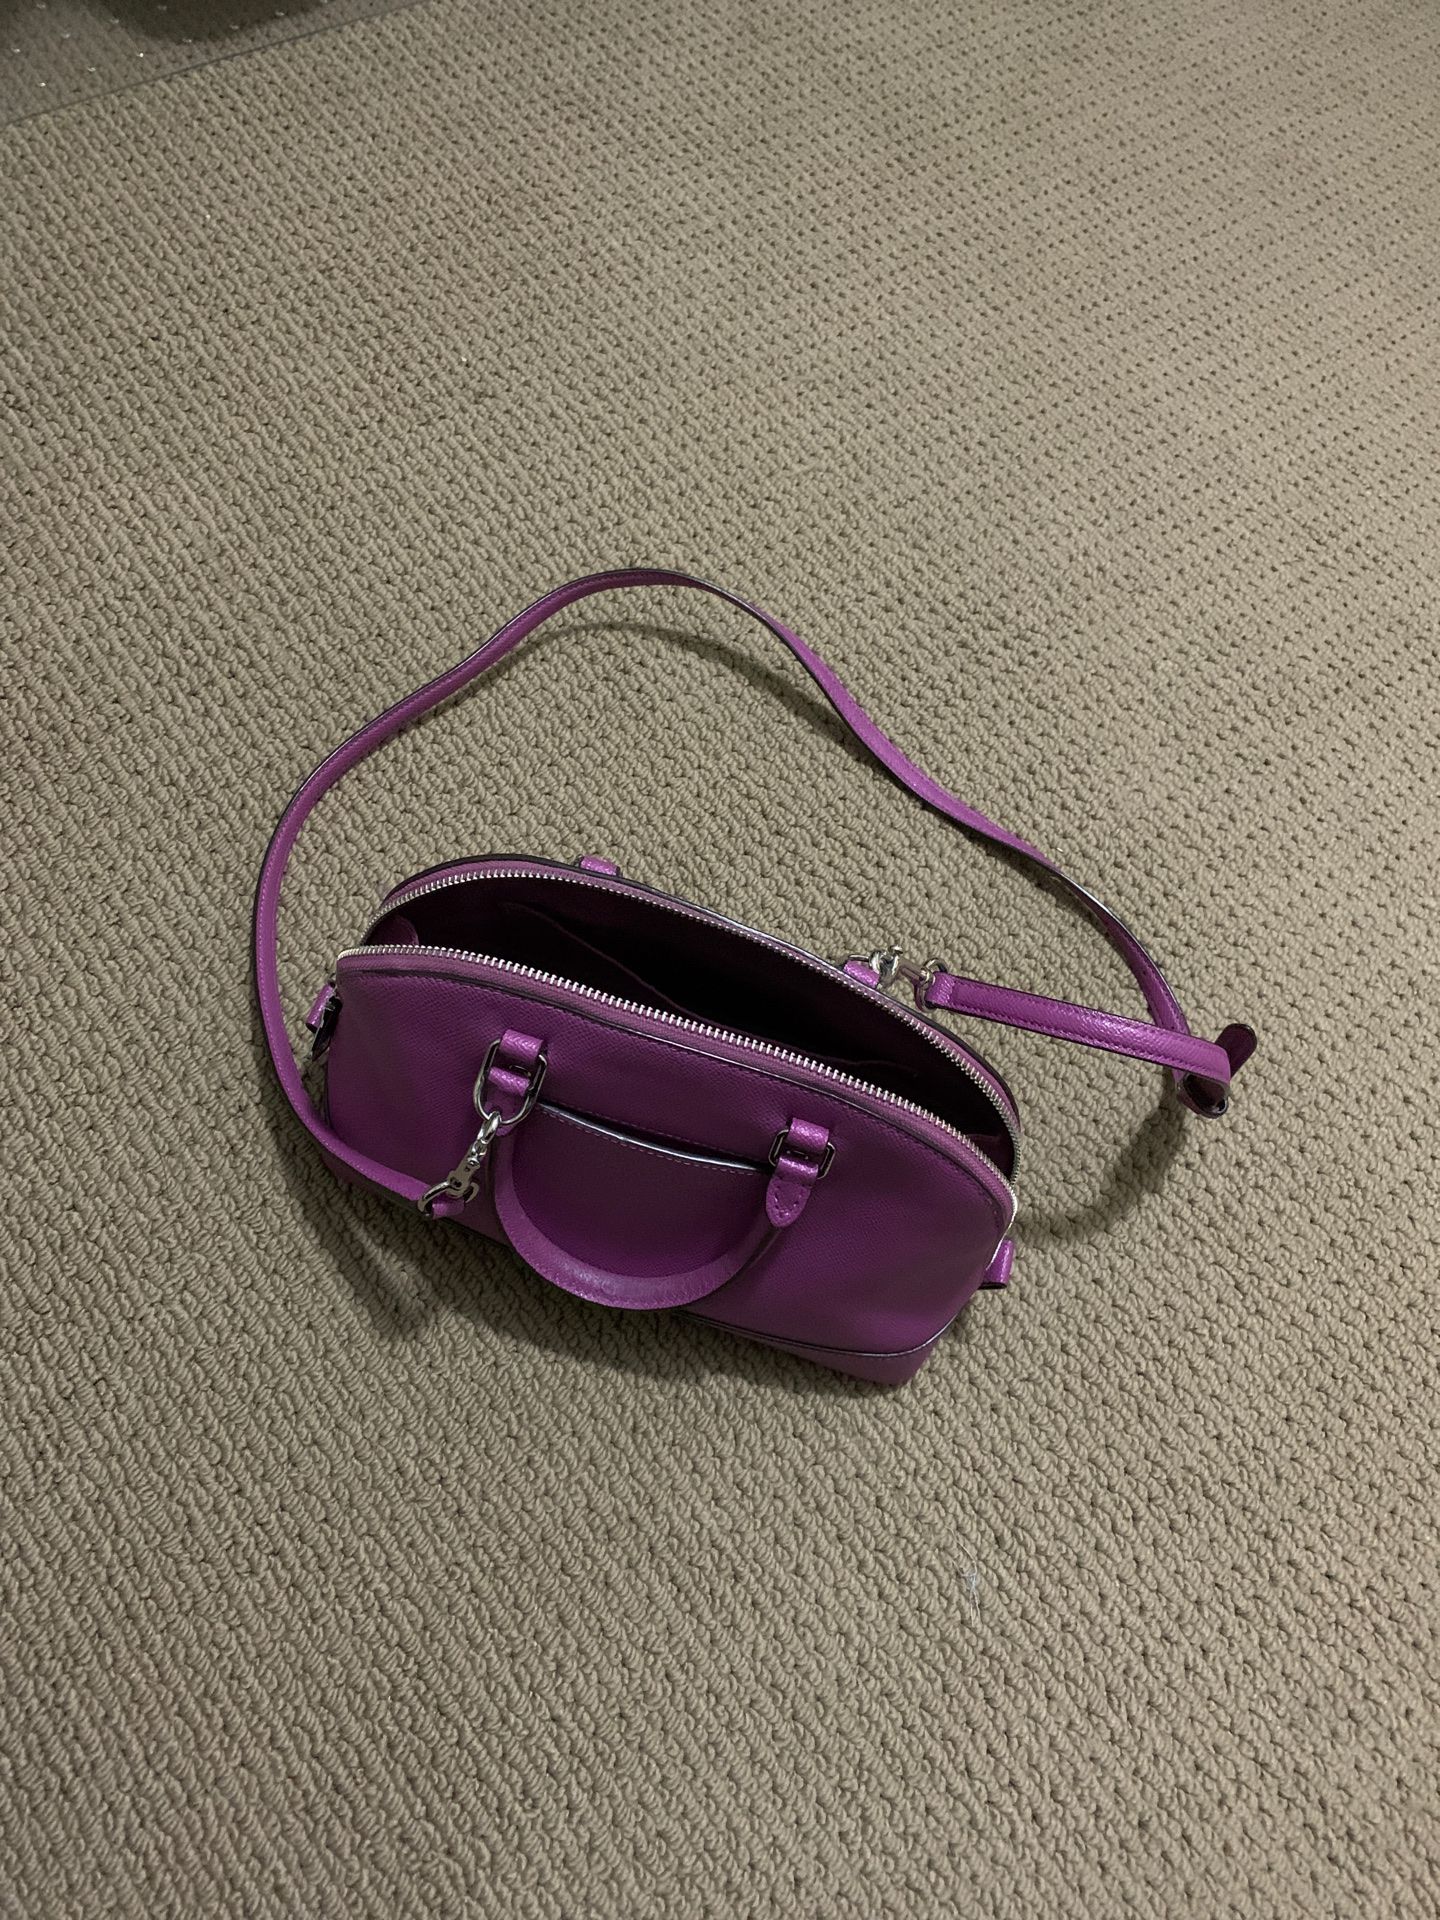 Coach purple leather purse